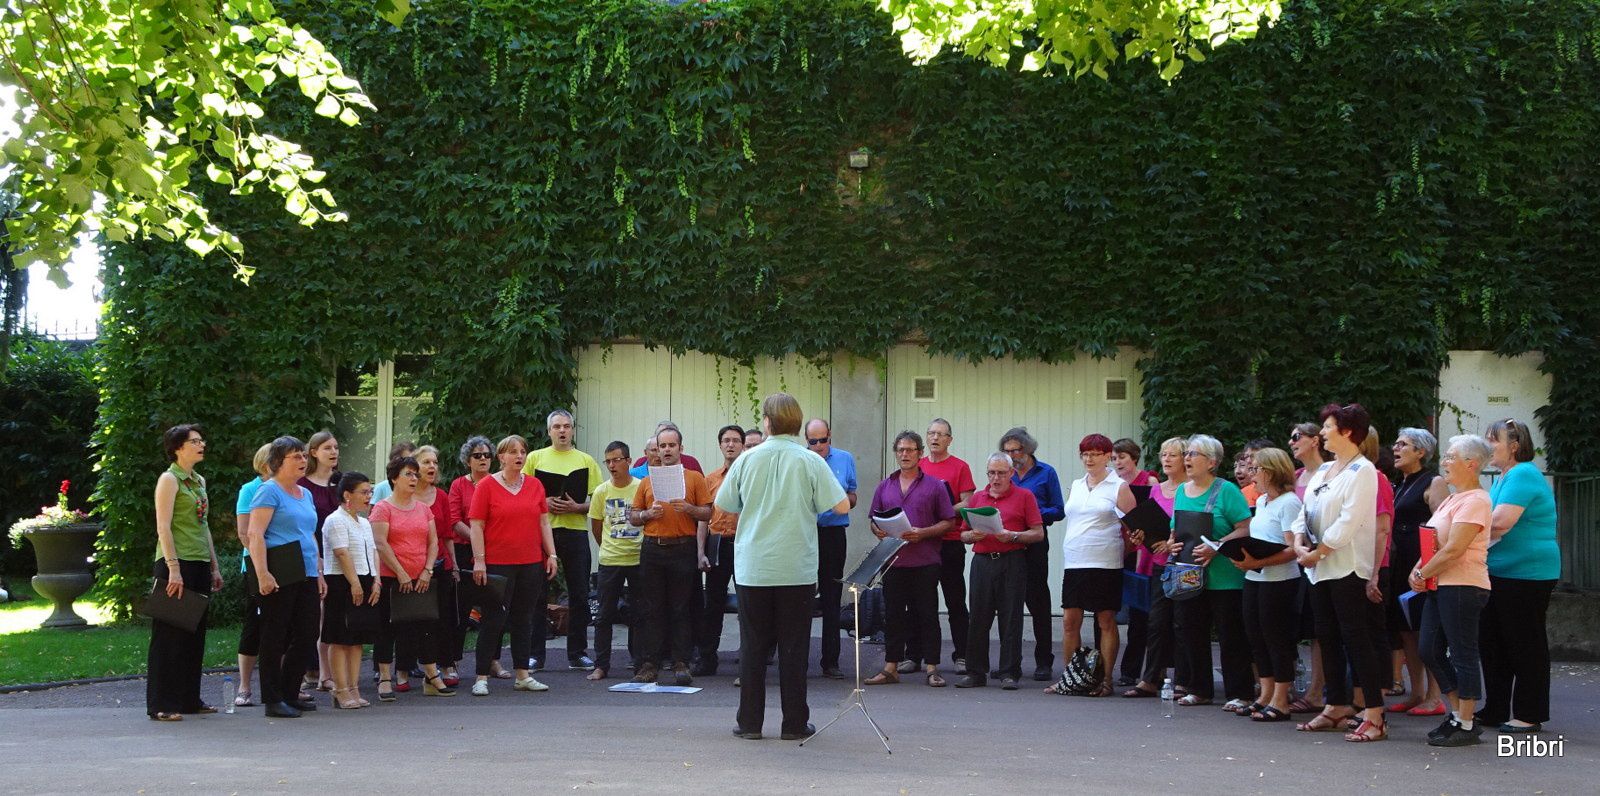 Le 21 juin, jour de la fête de la musique, avec notre chorale nous sommes allés chanter au jardin des plantes de Ct-Fd, nous avons participé, super.